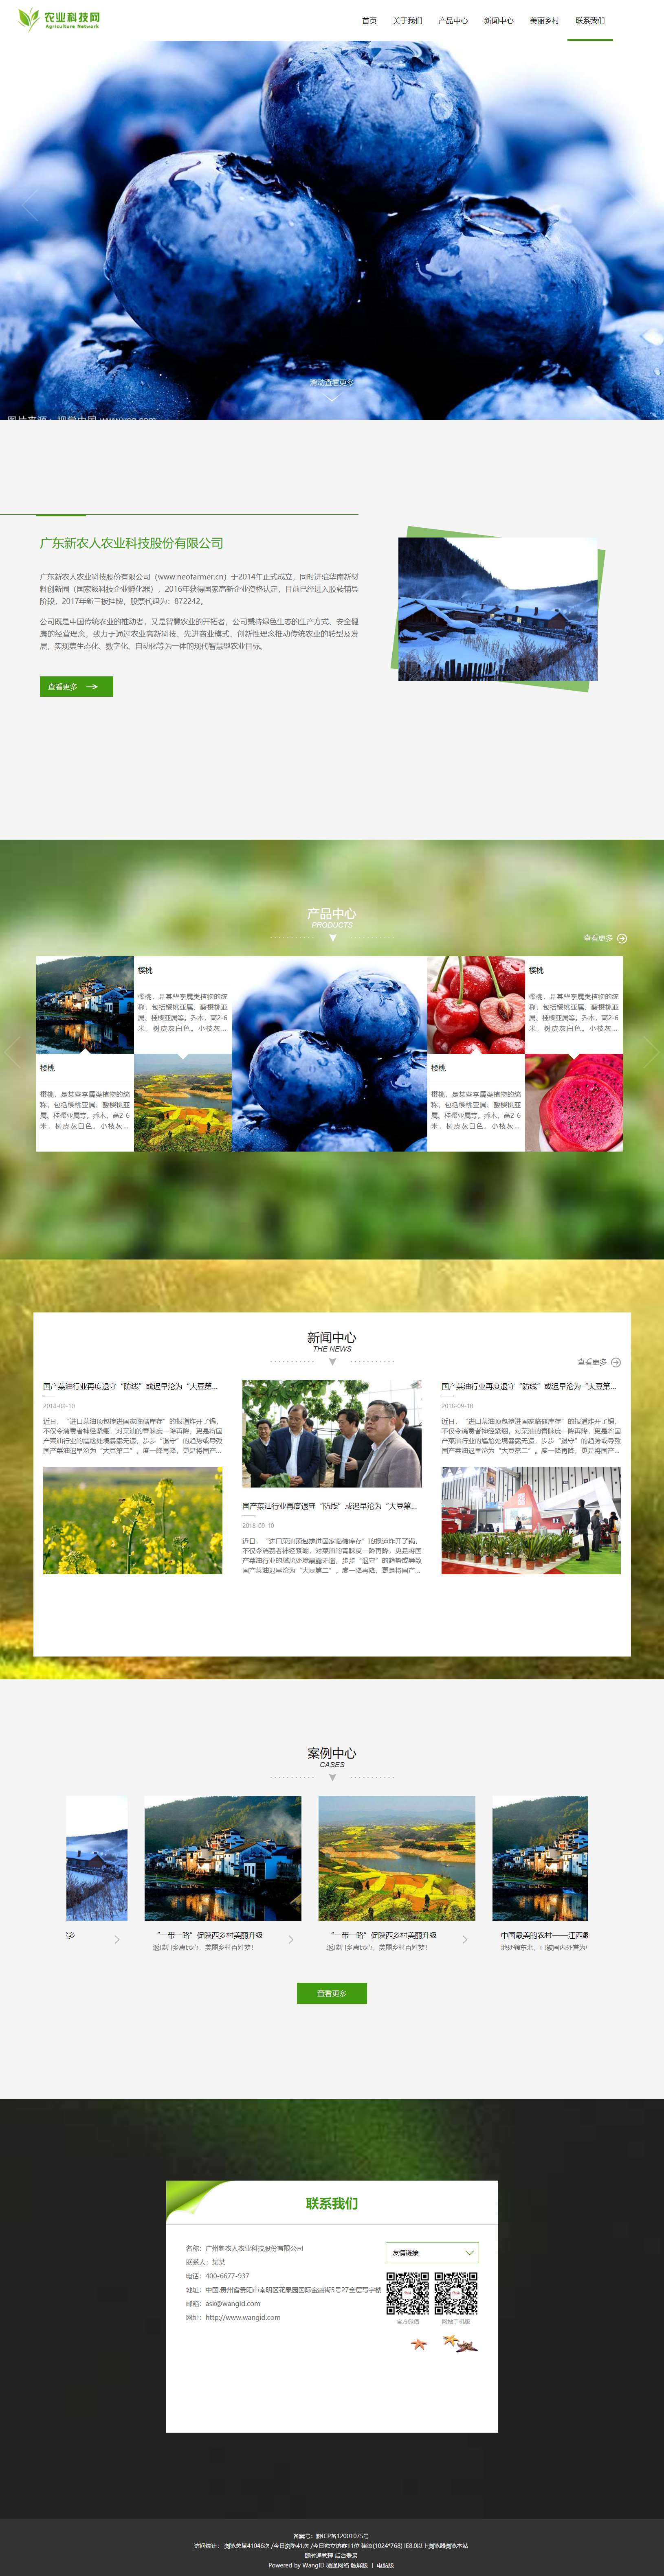 白色简洁风格的农业科技公司企业网站源码下载